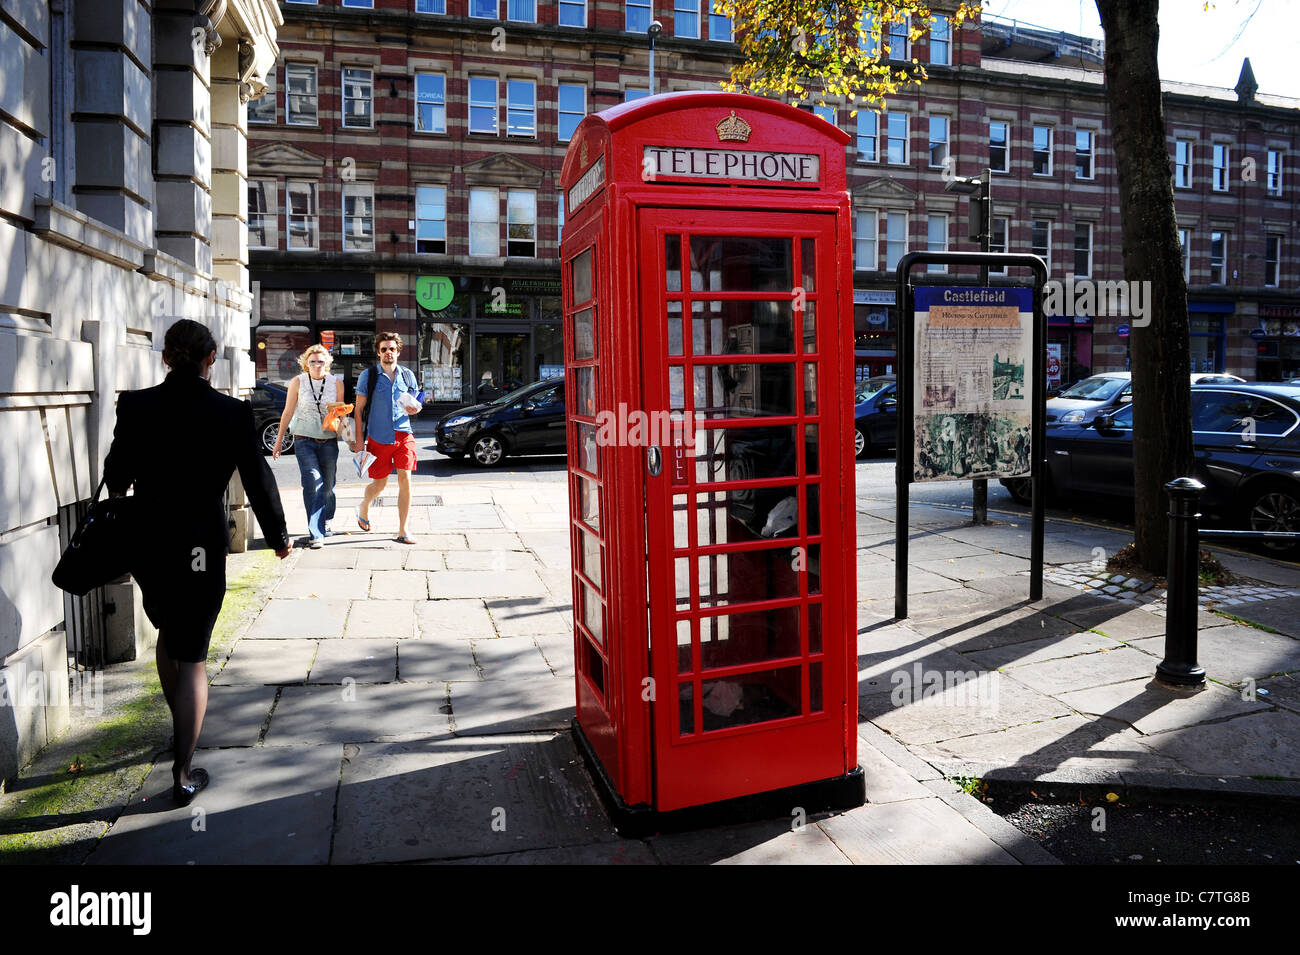 Traditionelle britische rote Telefonzelle, St. John's Street, Manchester, England. Bild von Paul Heyes, Mittwoch, 28. September 2011 Stockfoto